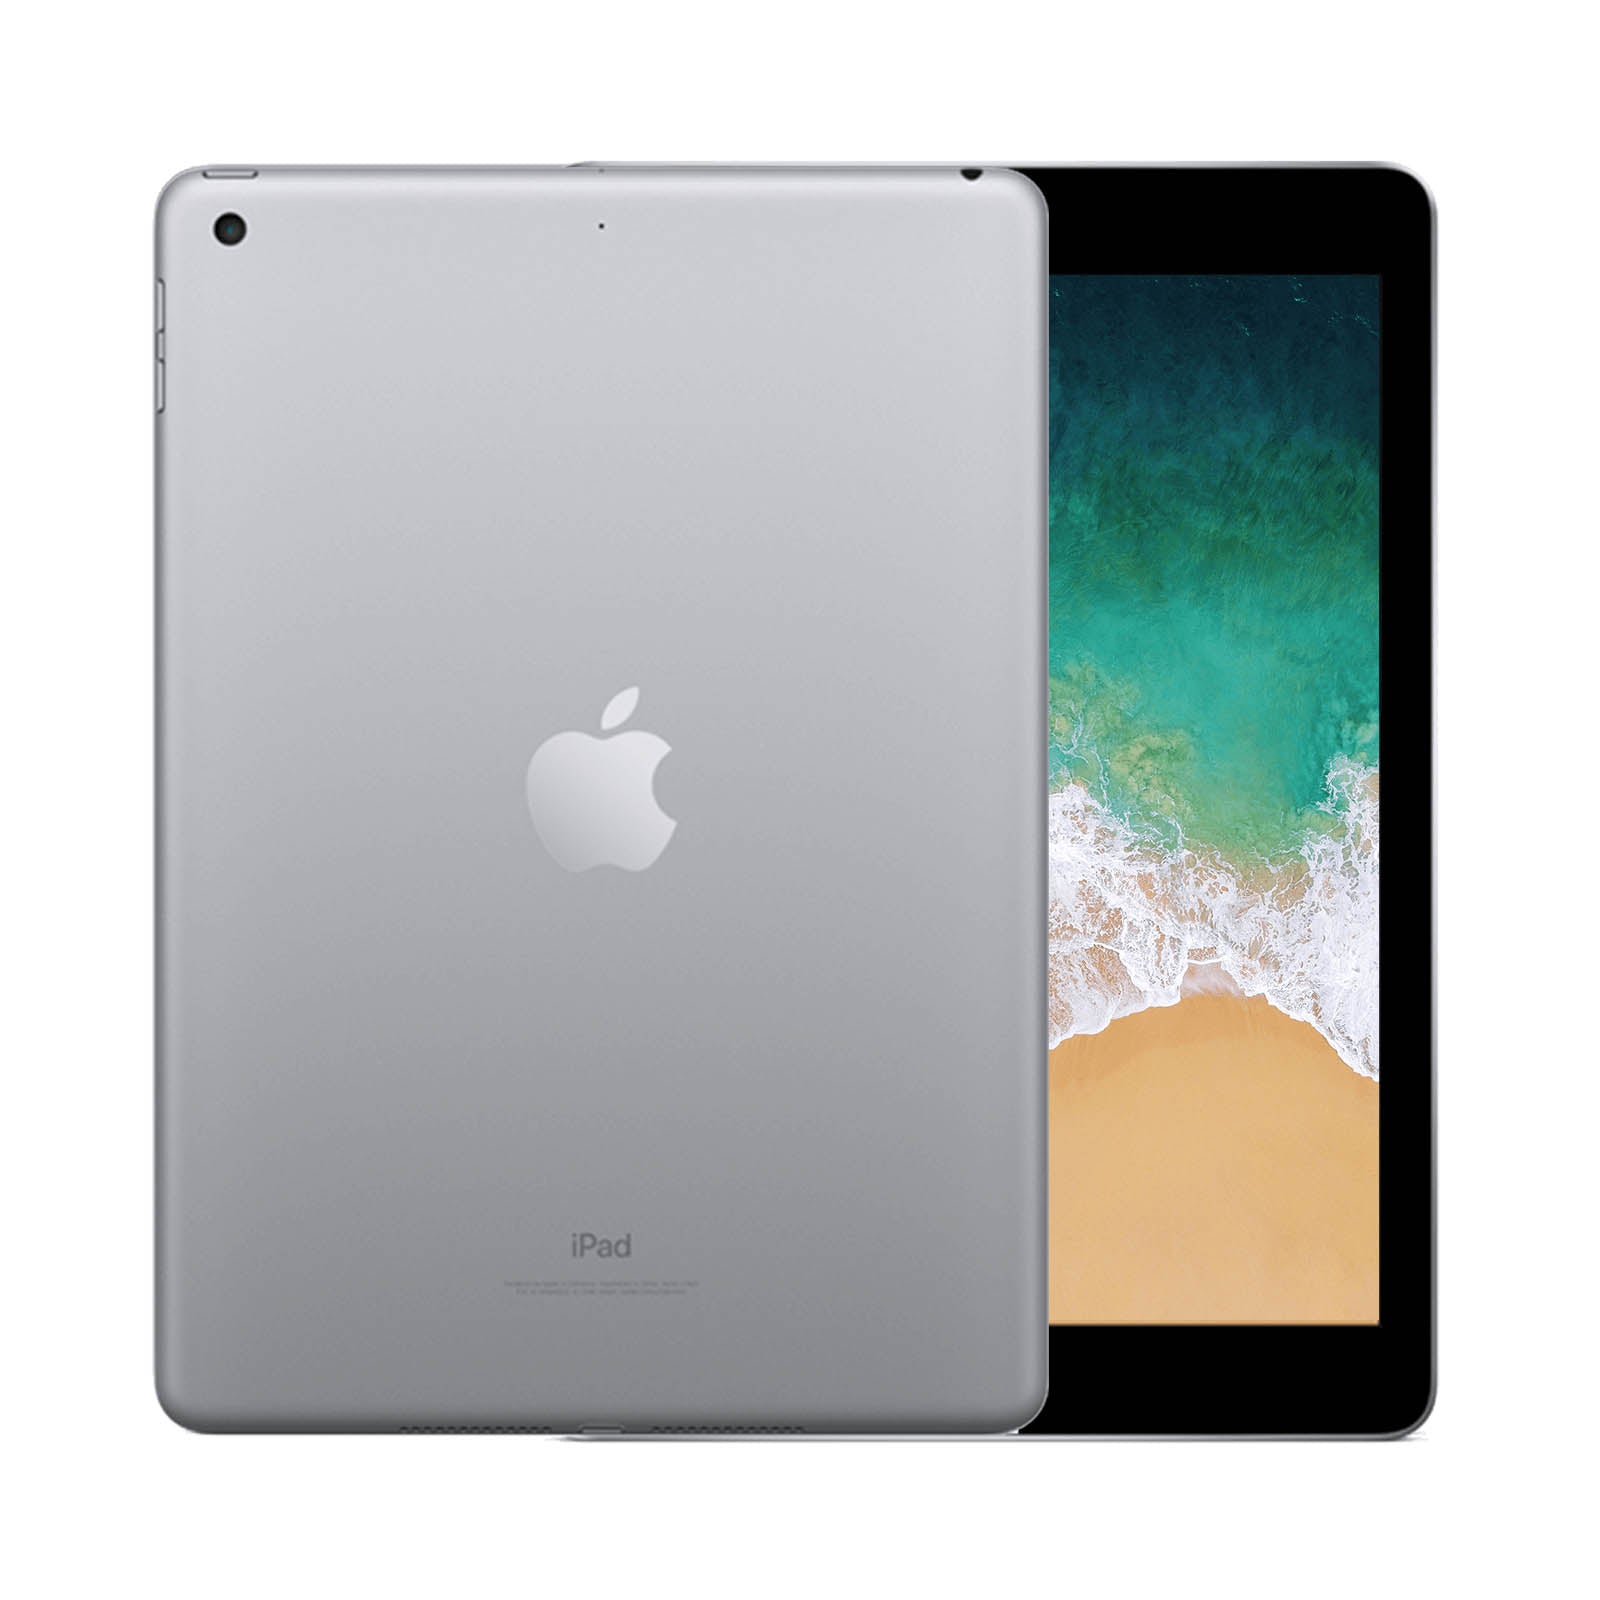 Apple iPad 5 128GB WiFi Space Grey - Pristine